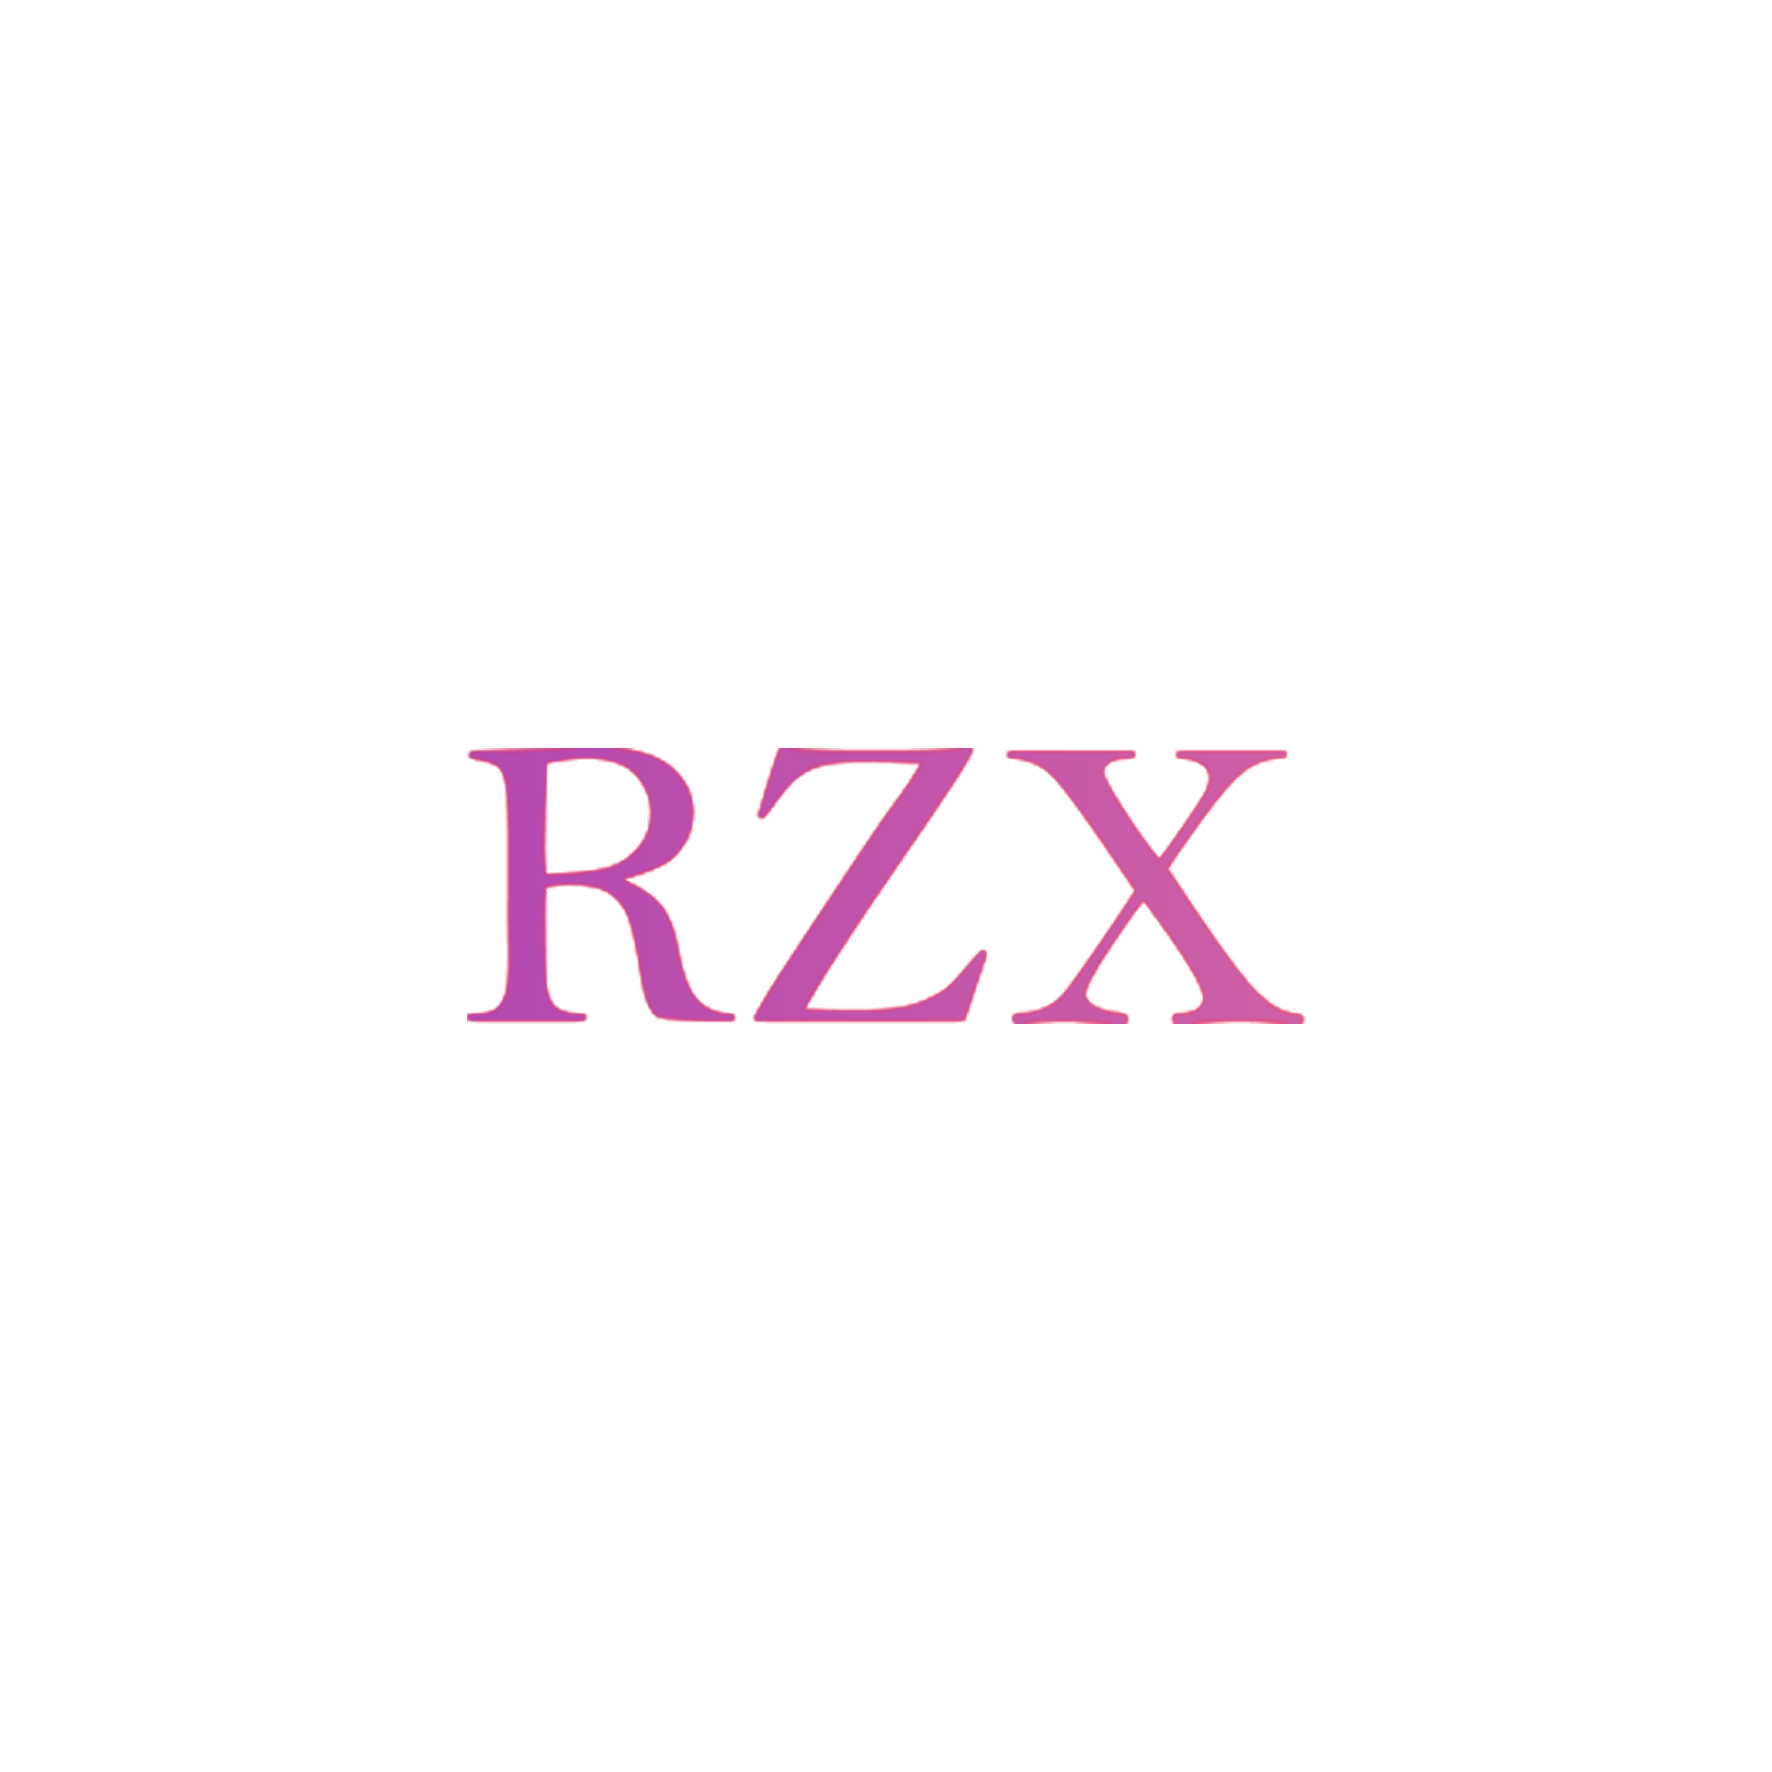 RZX